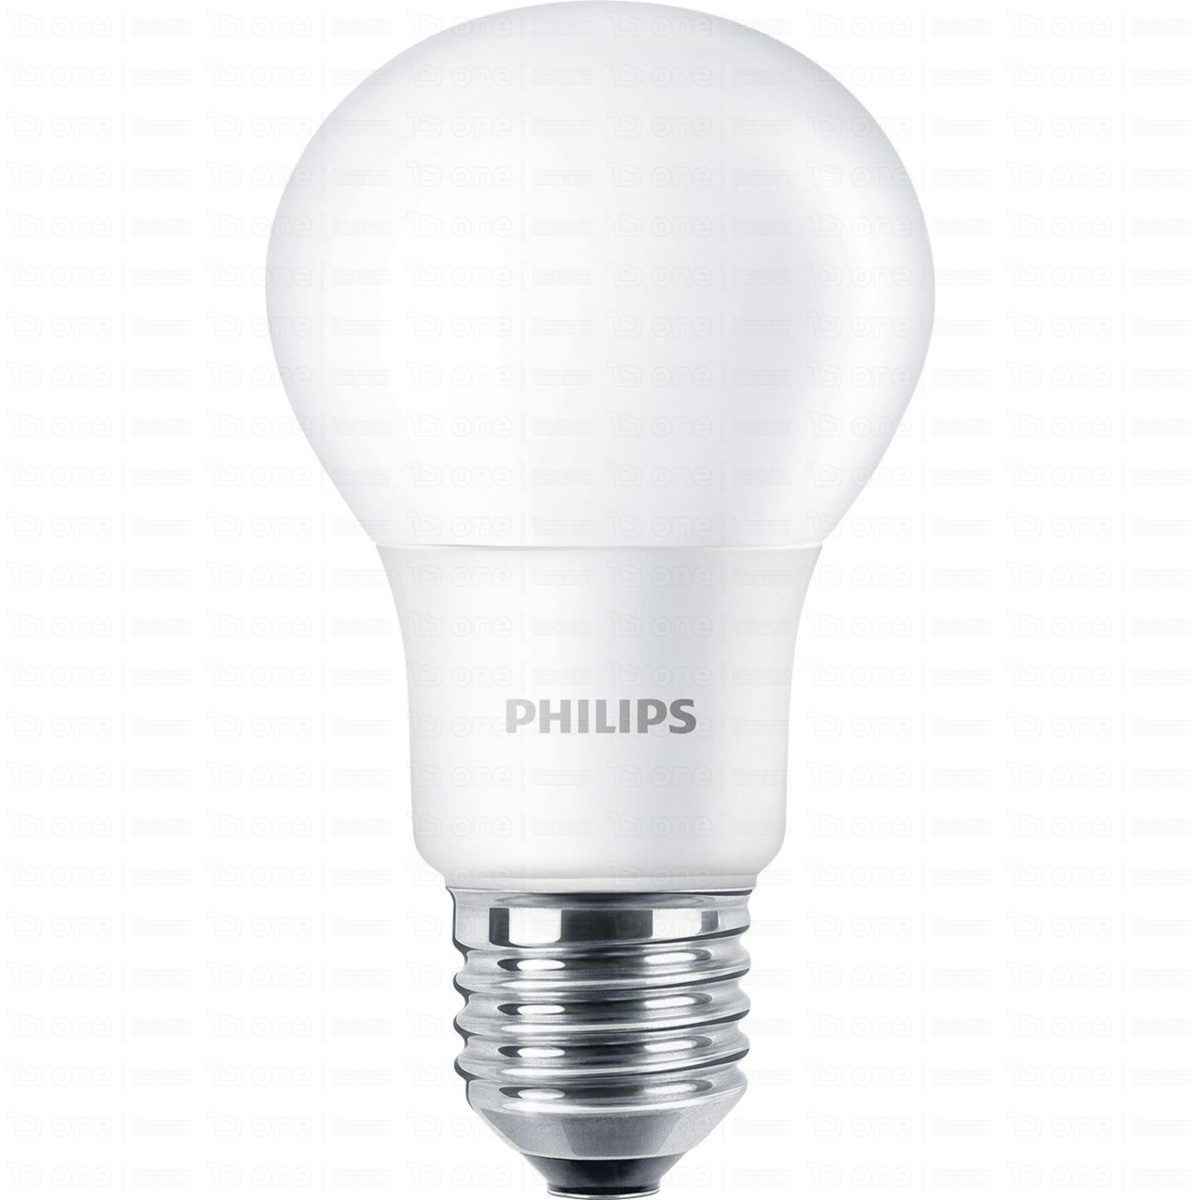 CorePro LEDbulb ND 13-100W A60 E27 830 A+ 3000 K bulb.